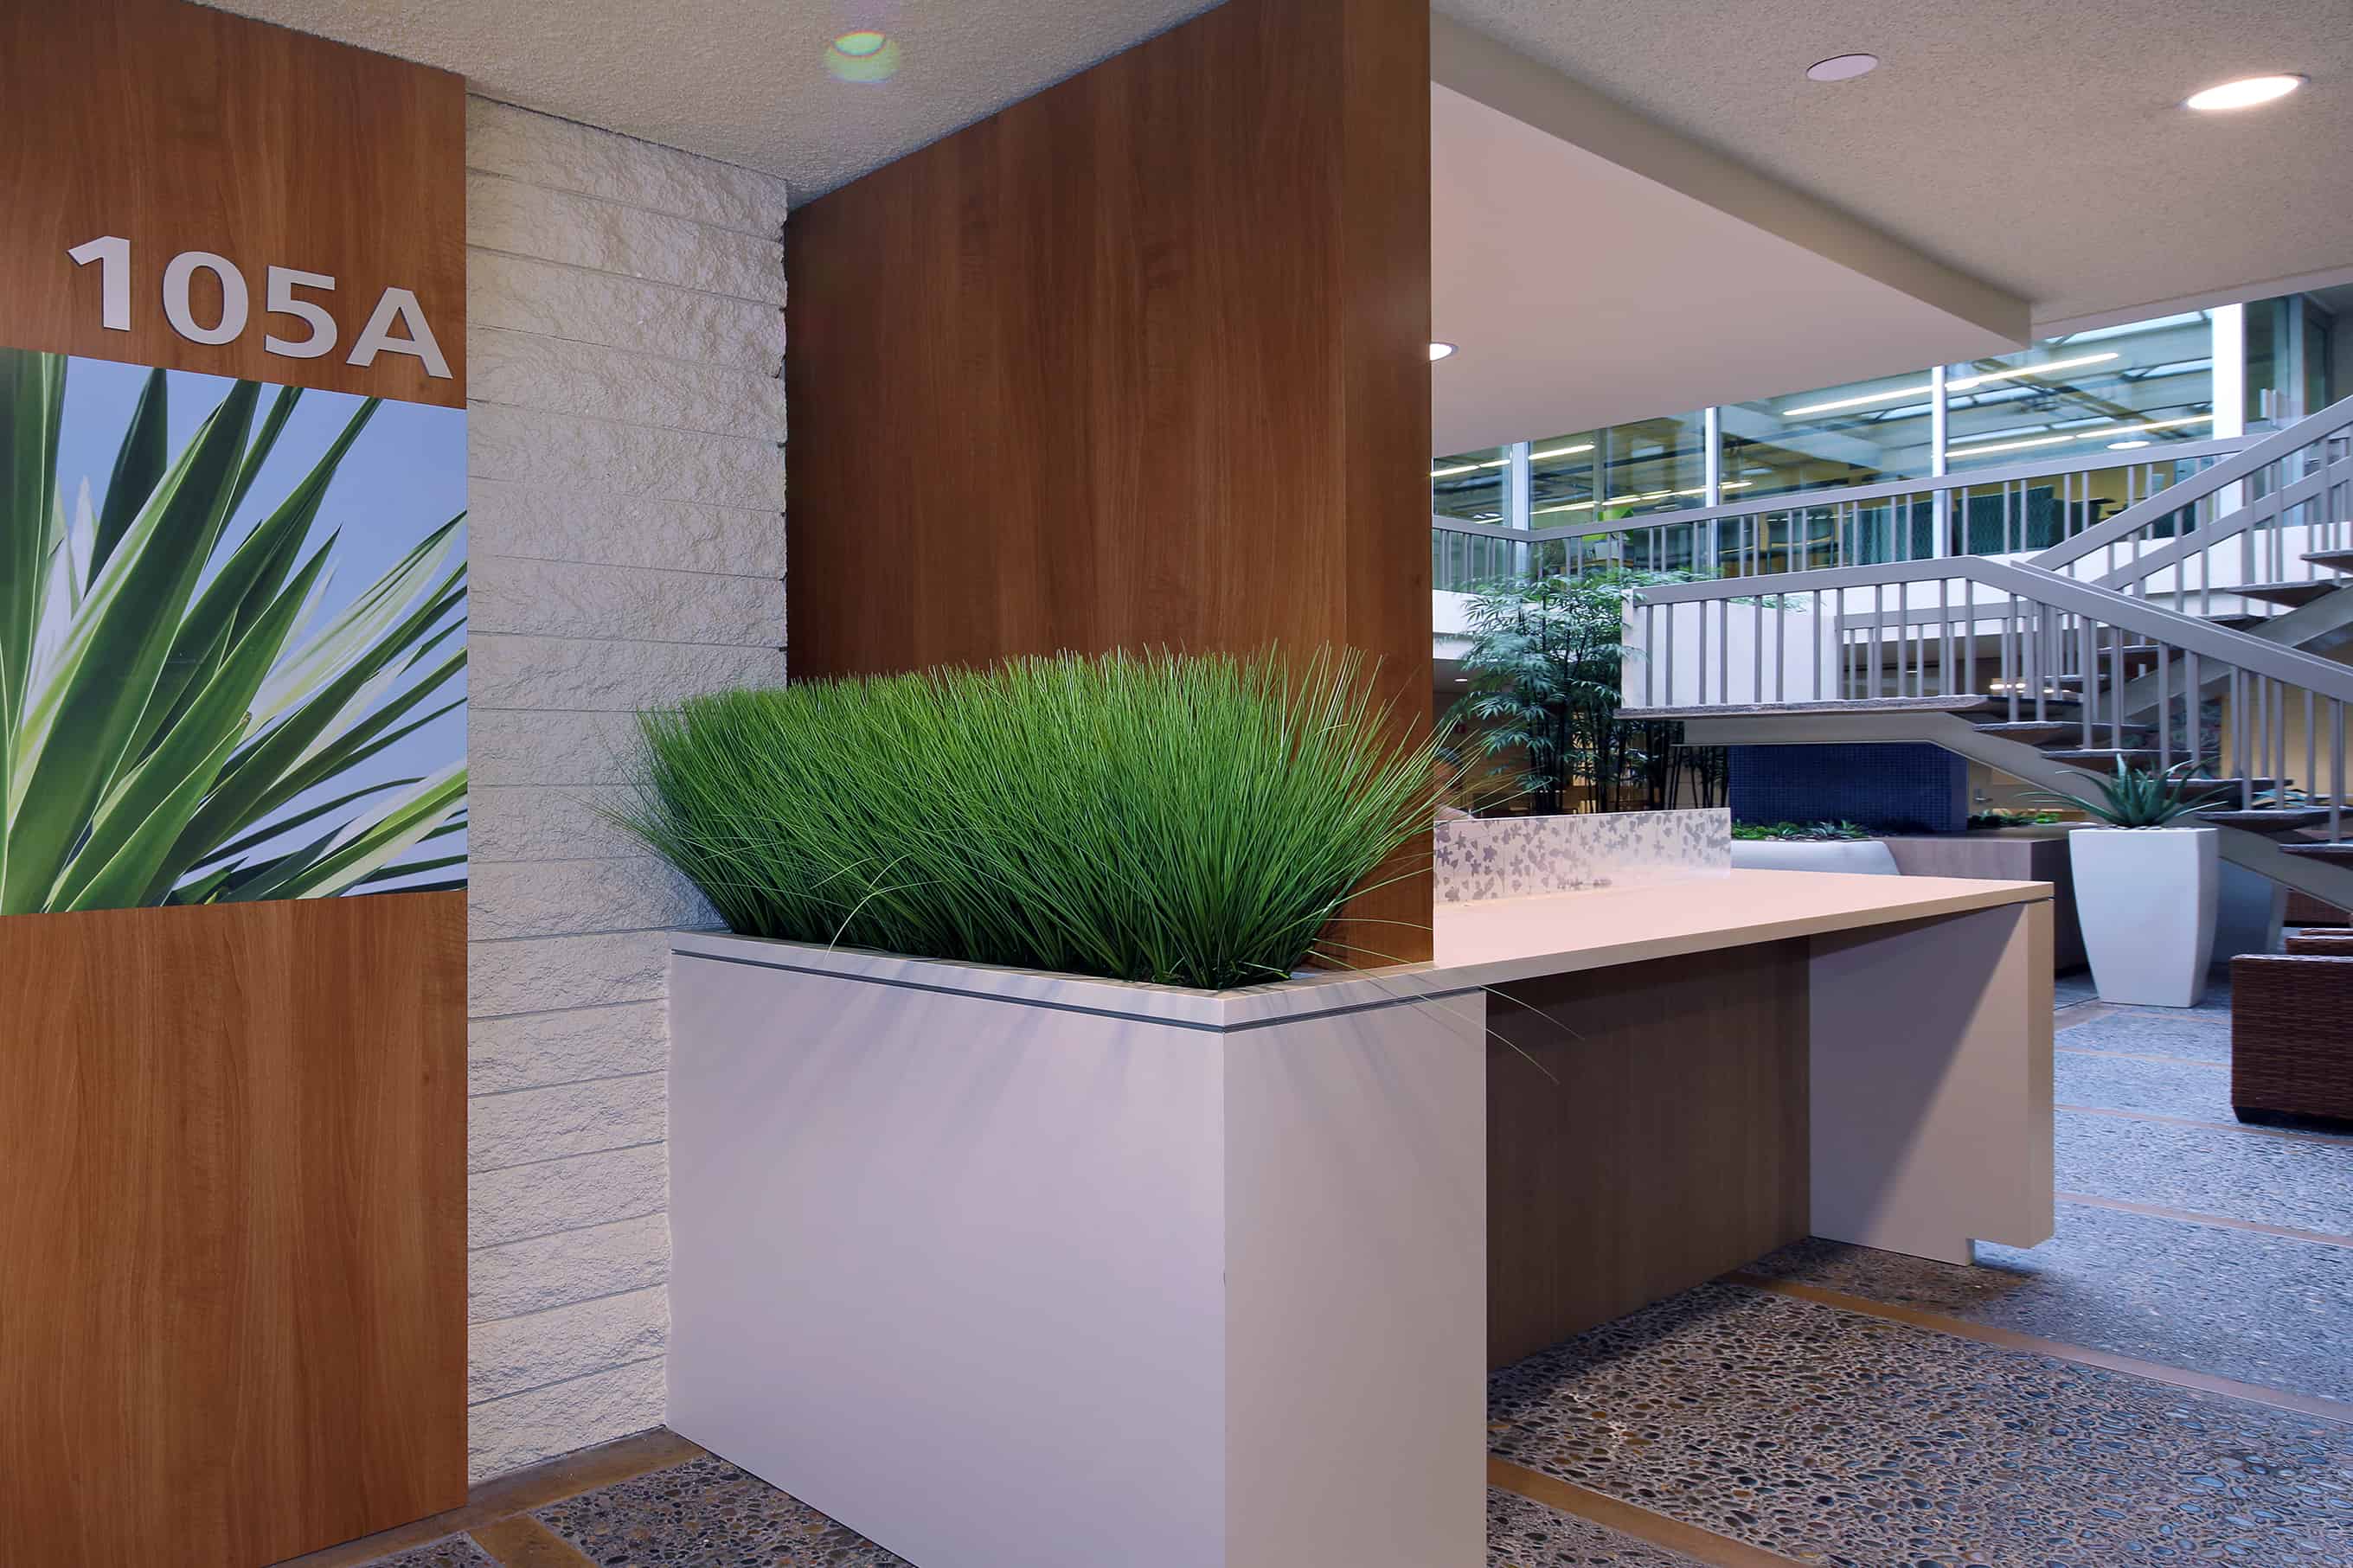 Replica-Grass-in-built-in-planter